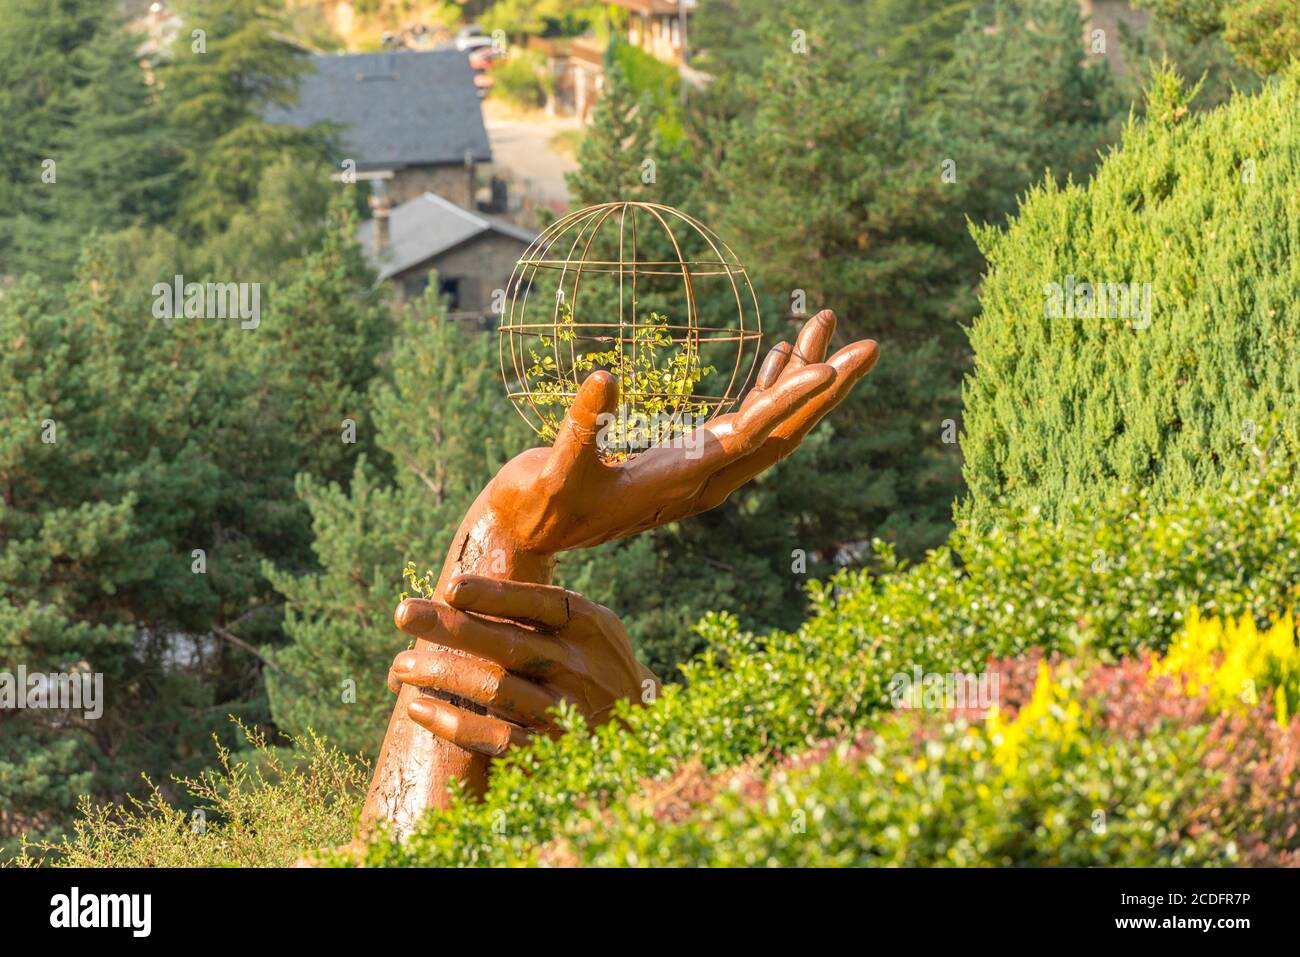 Juberri Sant Julia de Loria, Andorra: August 27 2020: Sculptures in Jardins de Juberri in summer 2020 in the Pyrenees of Andorra. Stock Photo